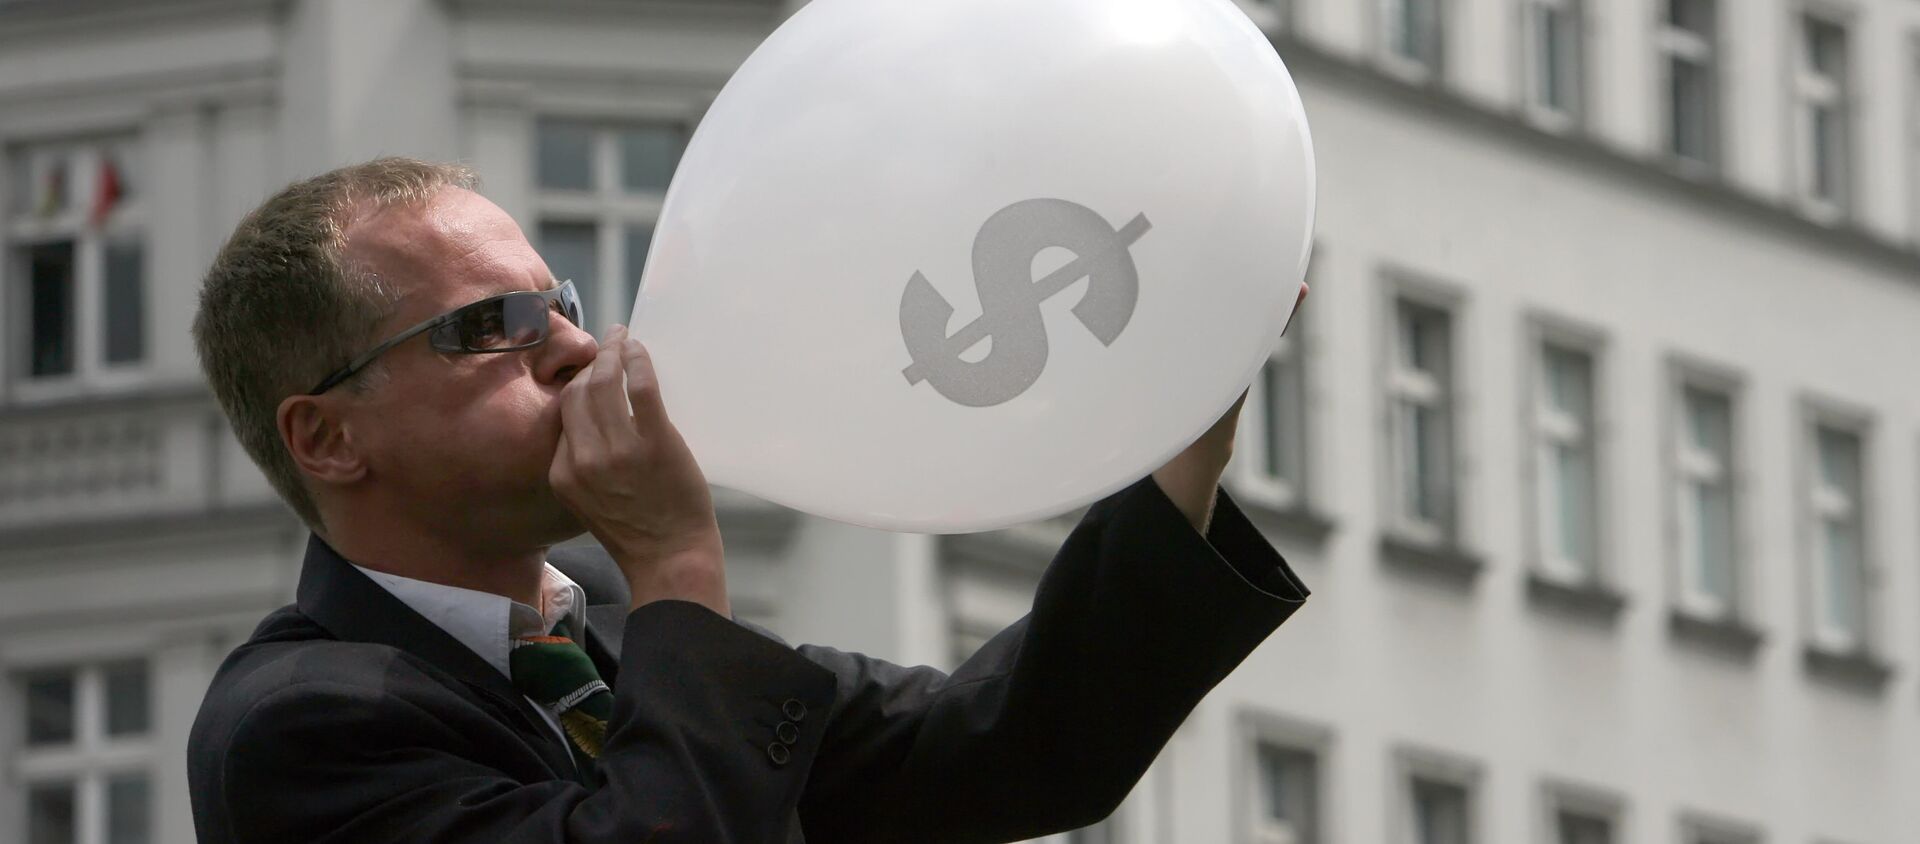 Человек в костюме надувает воздушный шар со значком американского доллара, архивное фото - Sputnik Тоҷикистон, 1920, 20.08.2019